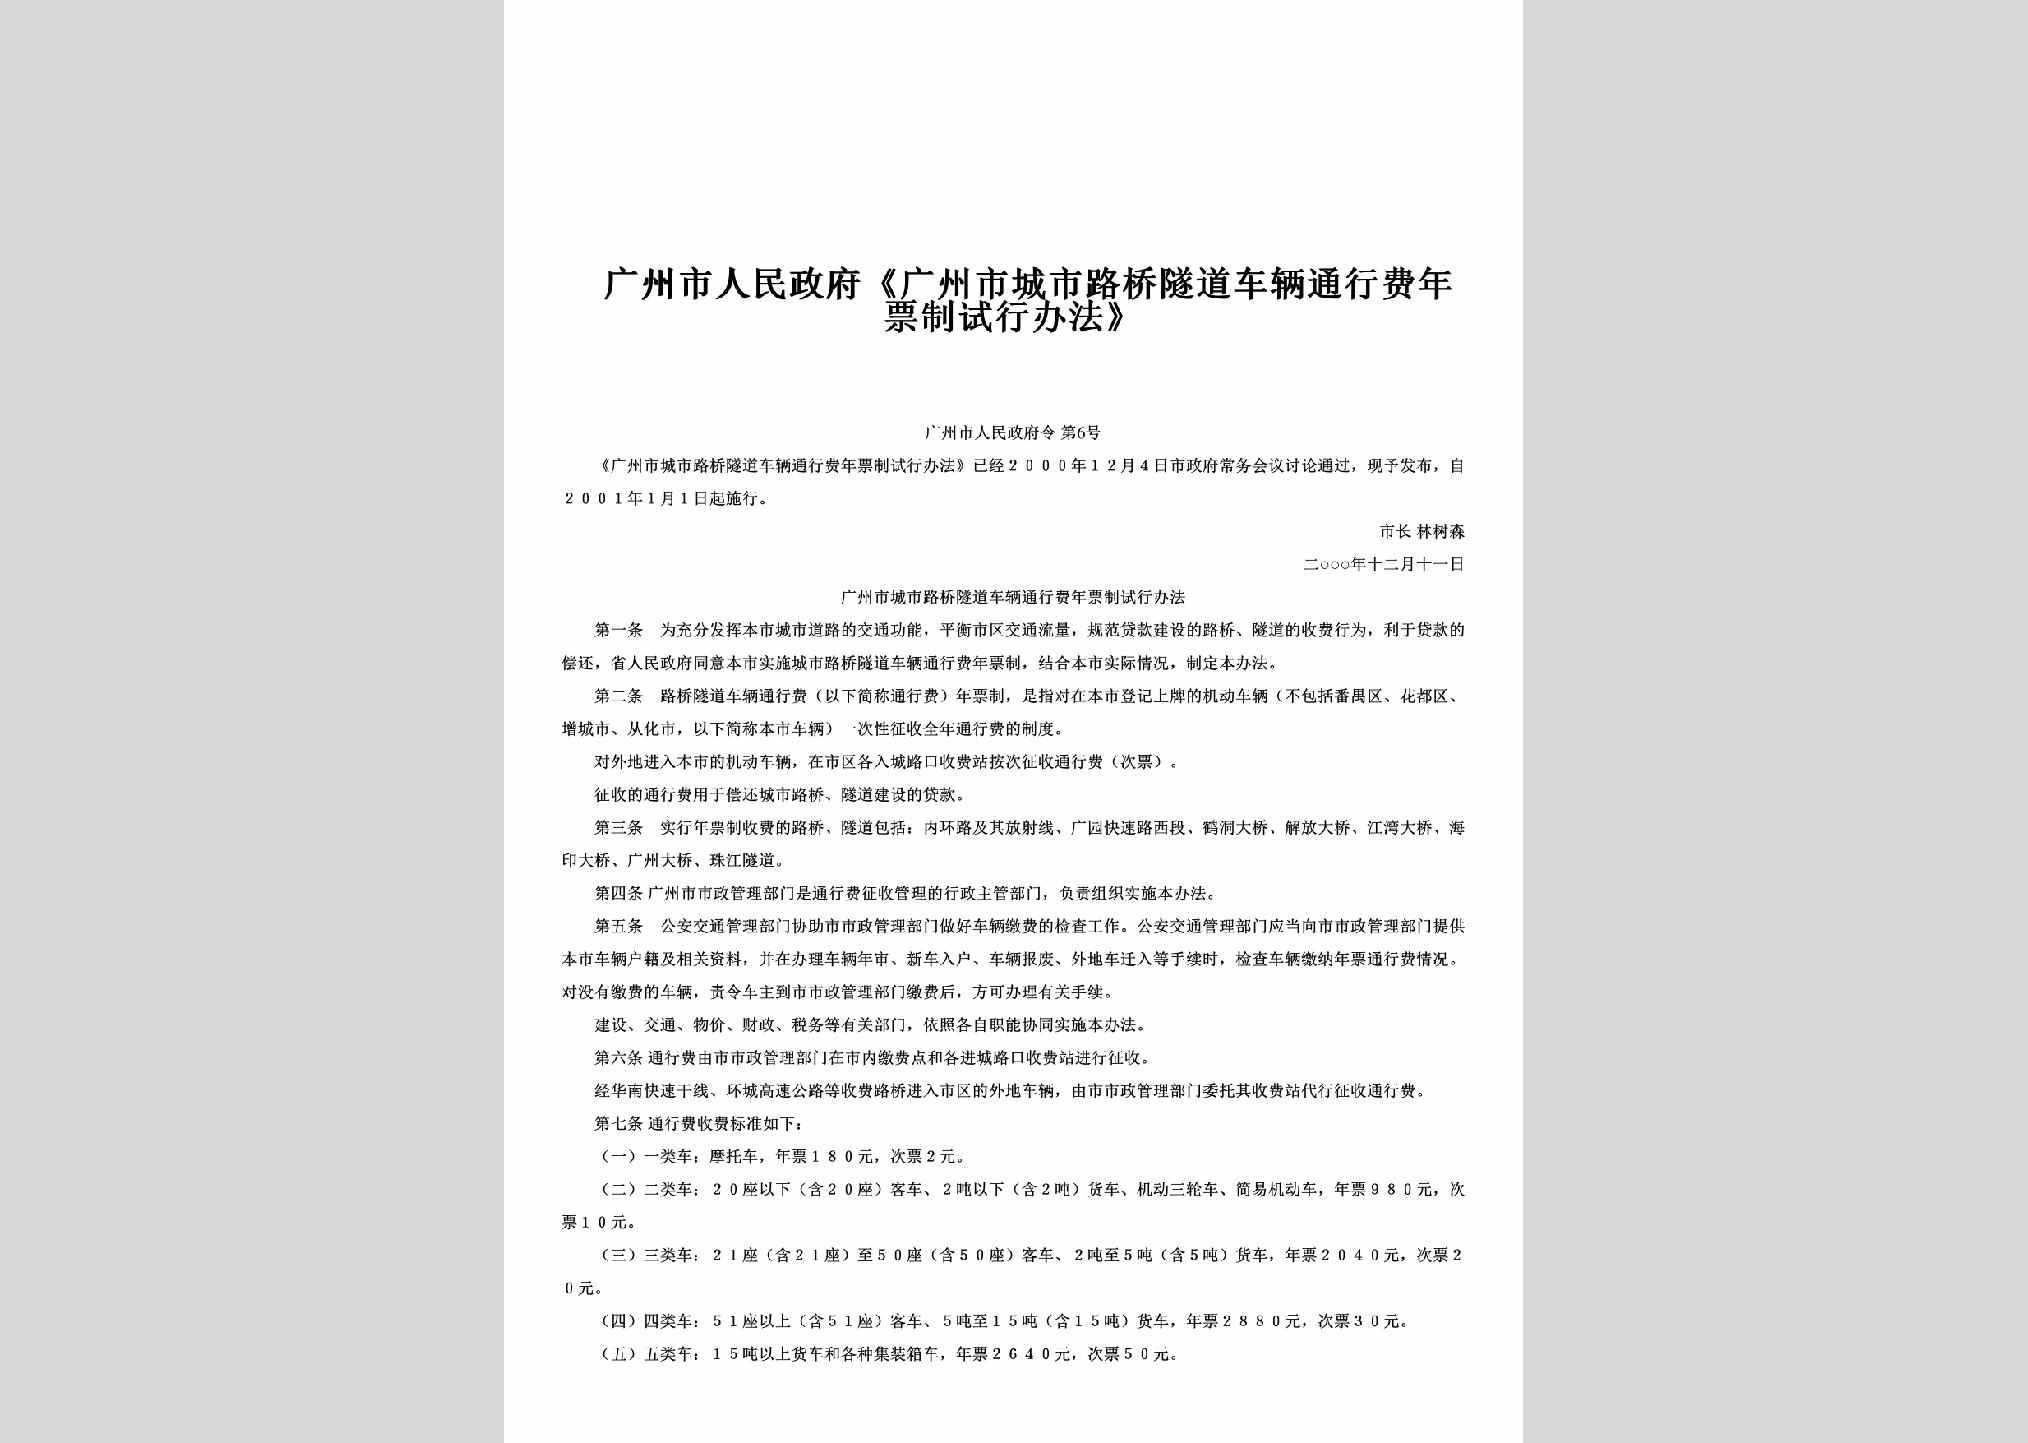 GZSRMZFL-2001-6：《广州市城市路桥隧道车辆通行费年票制试行办法》